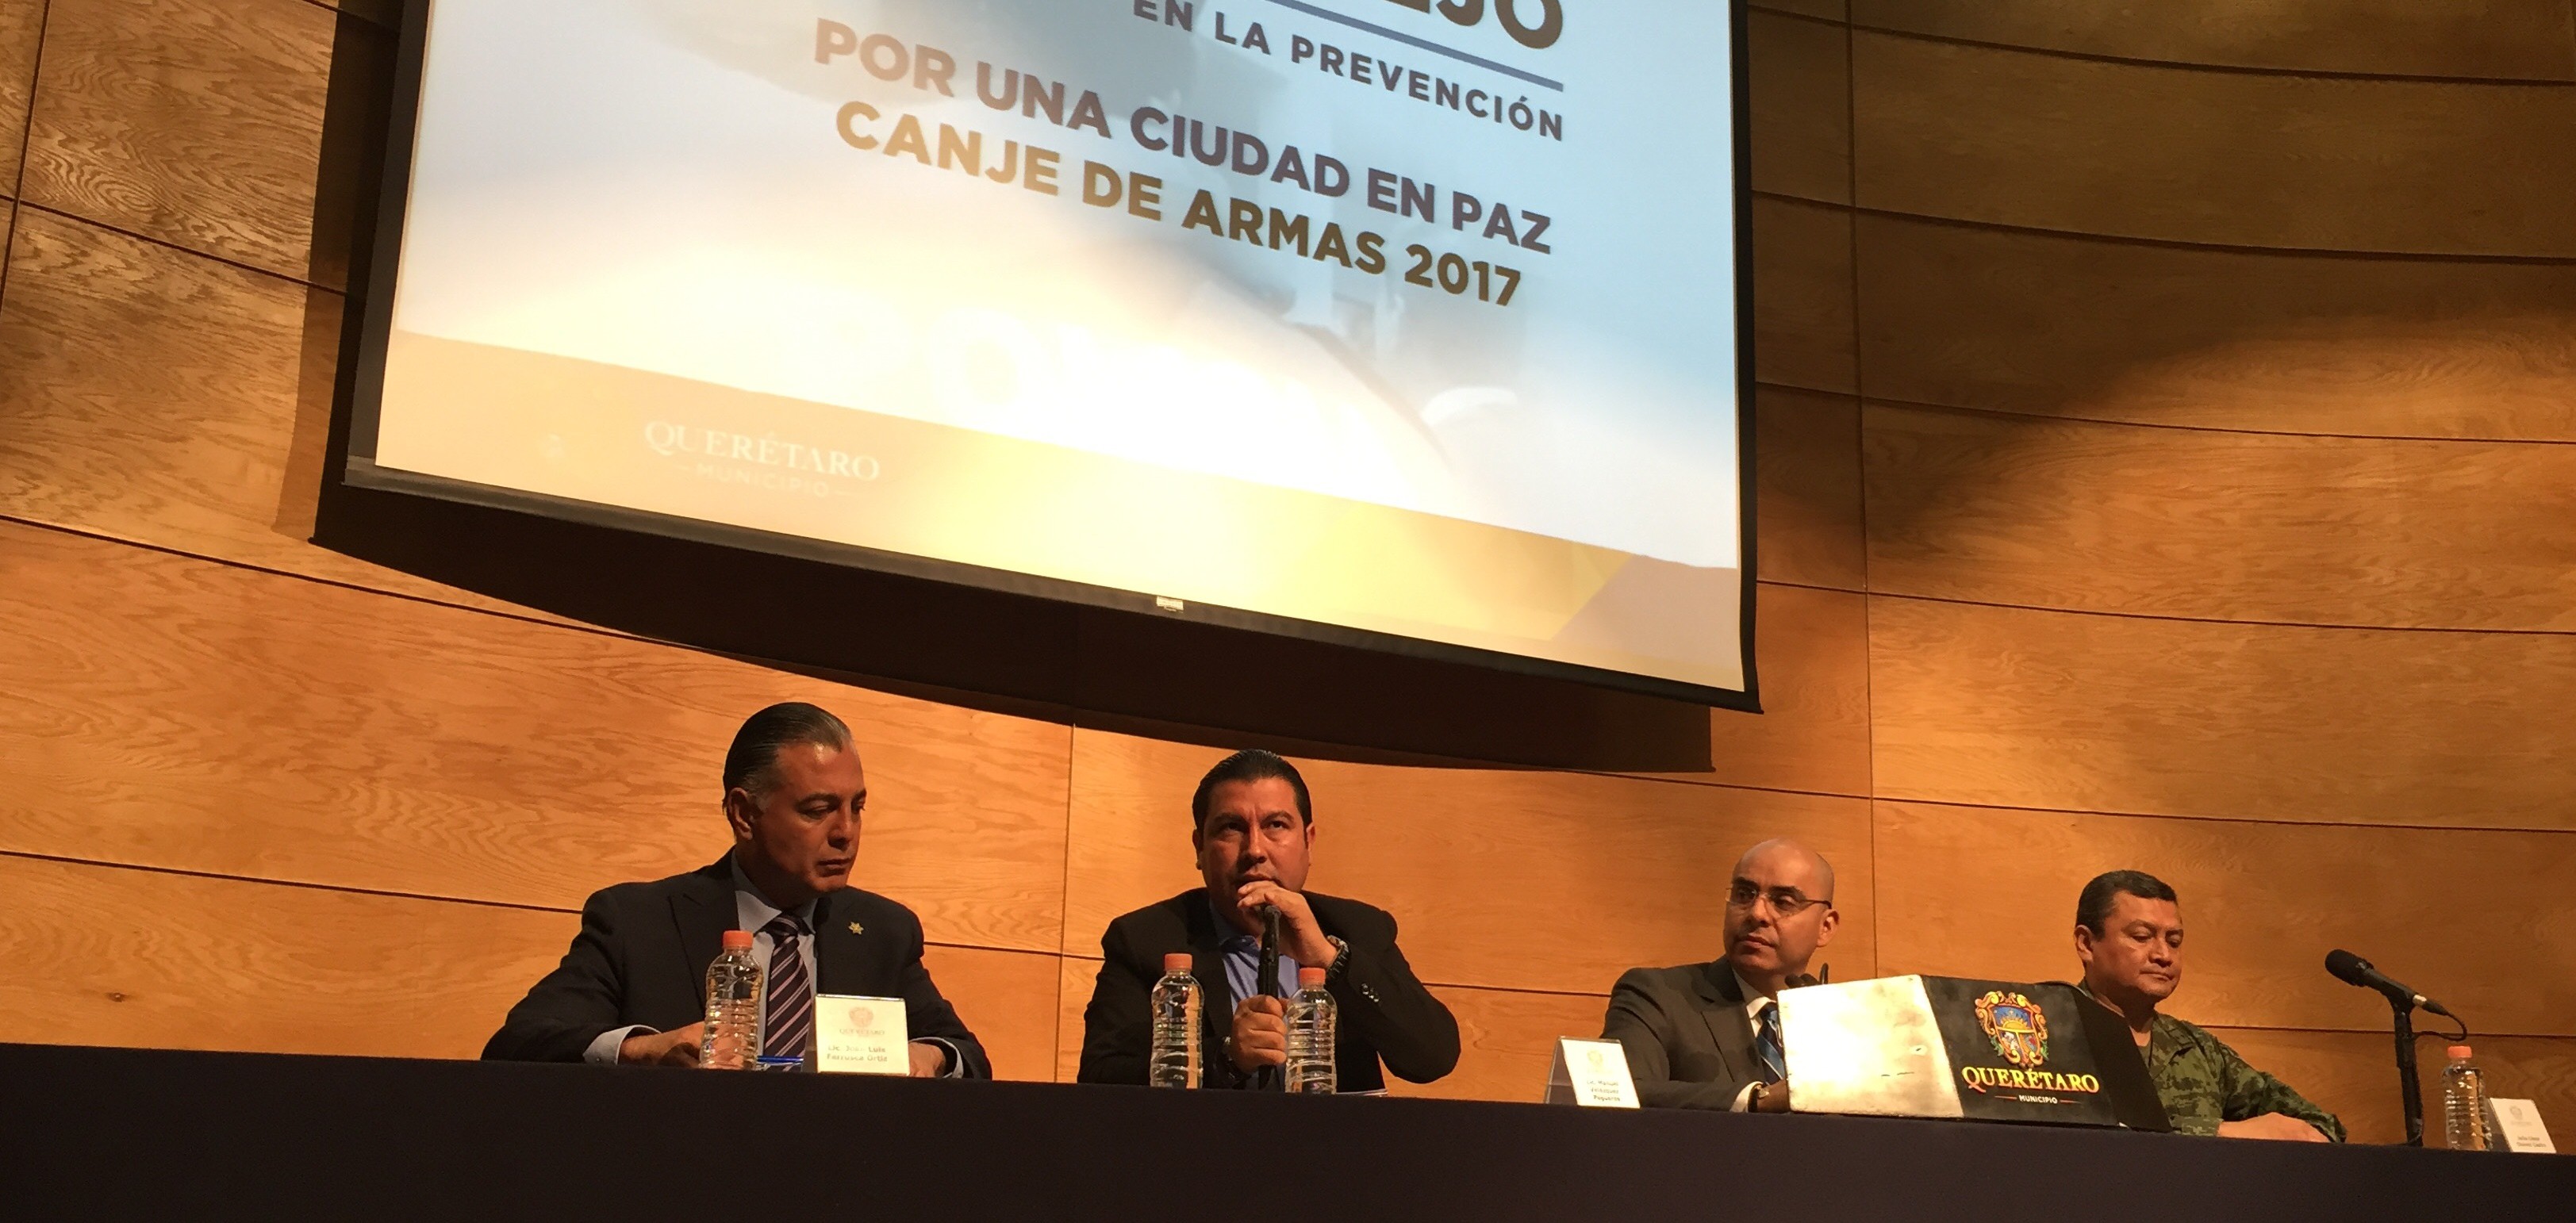  Para reducir inseguridad, municipio de Querétaro realizará canje de armas